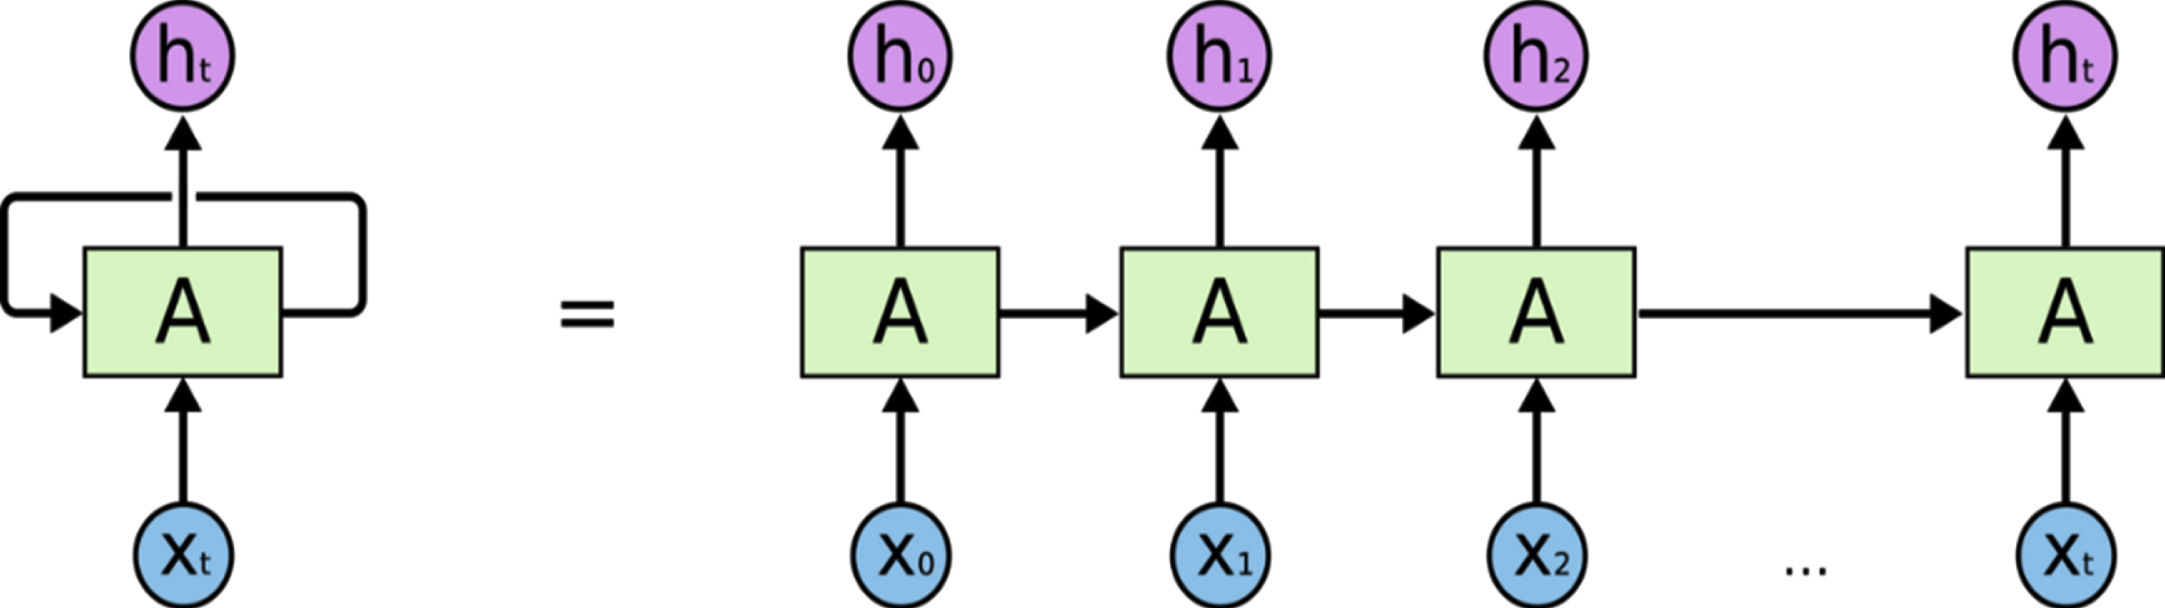 RNN structure.